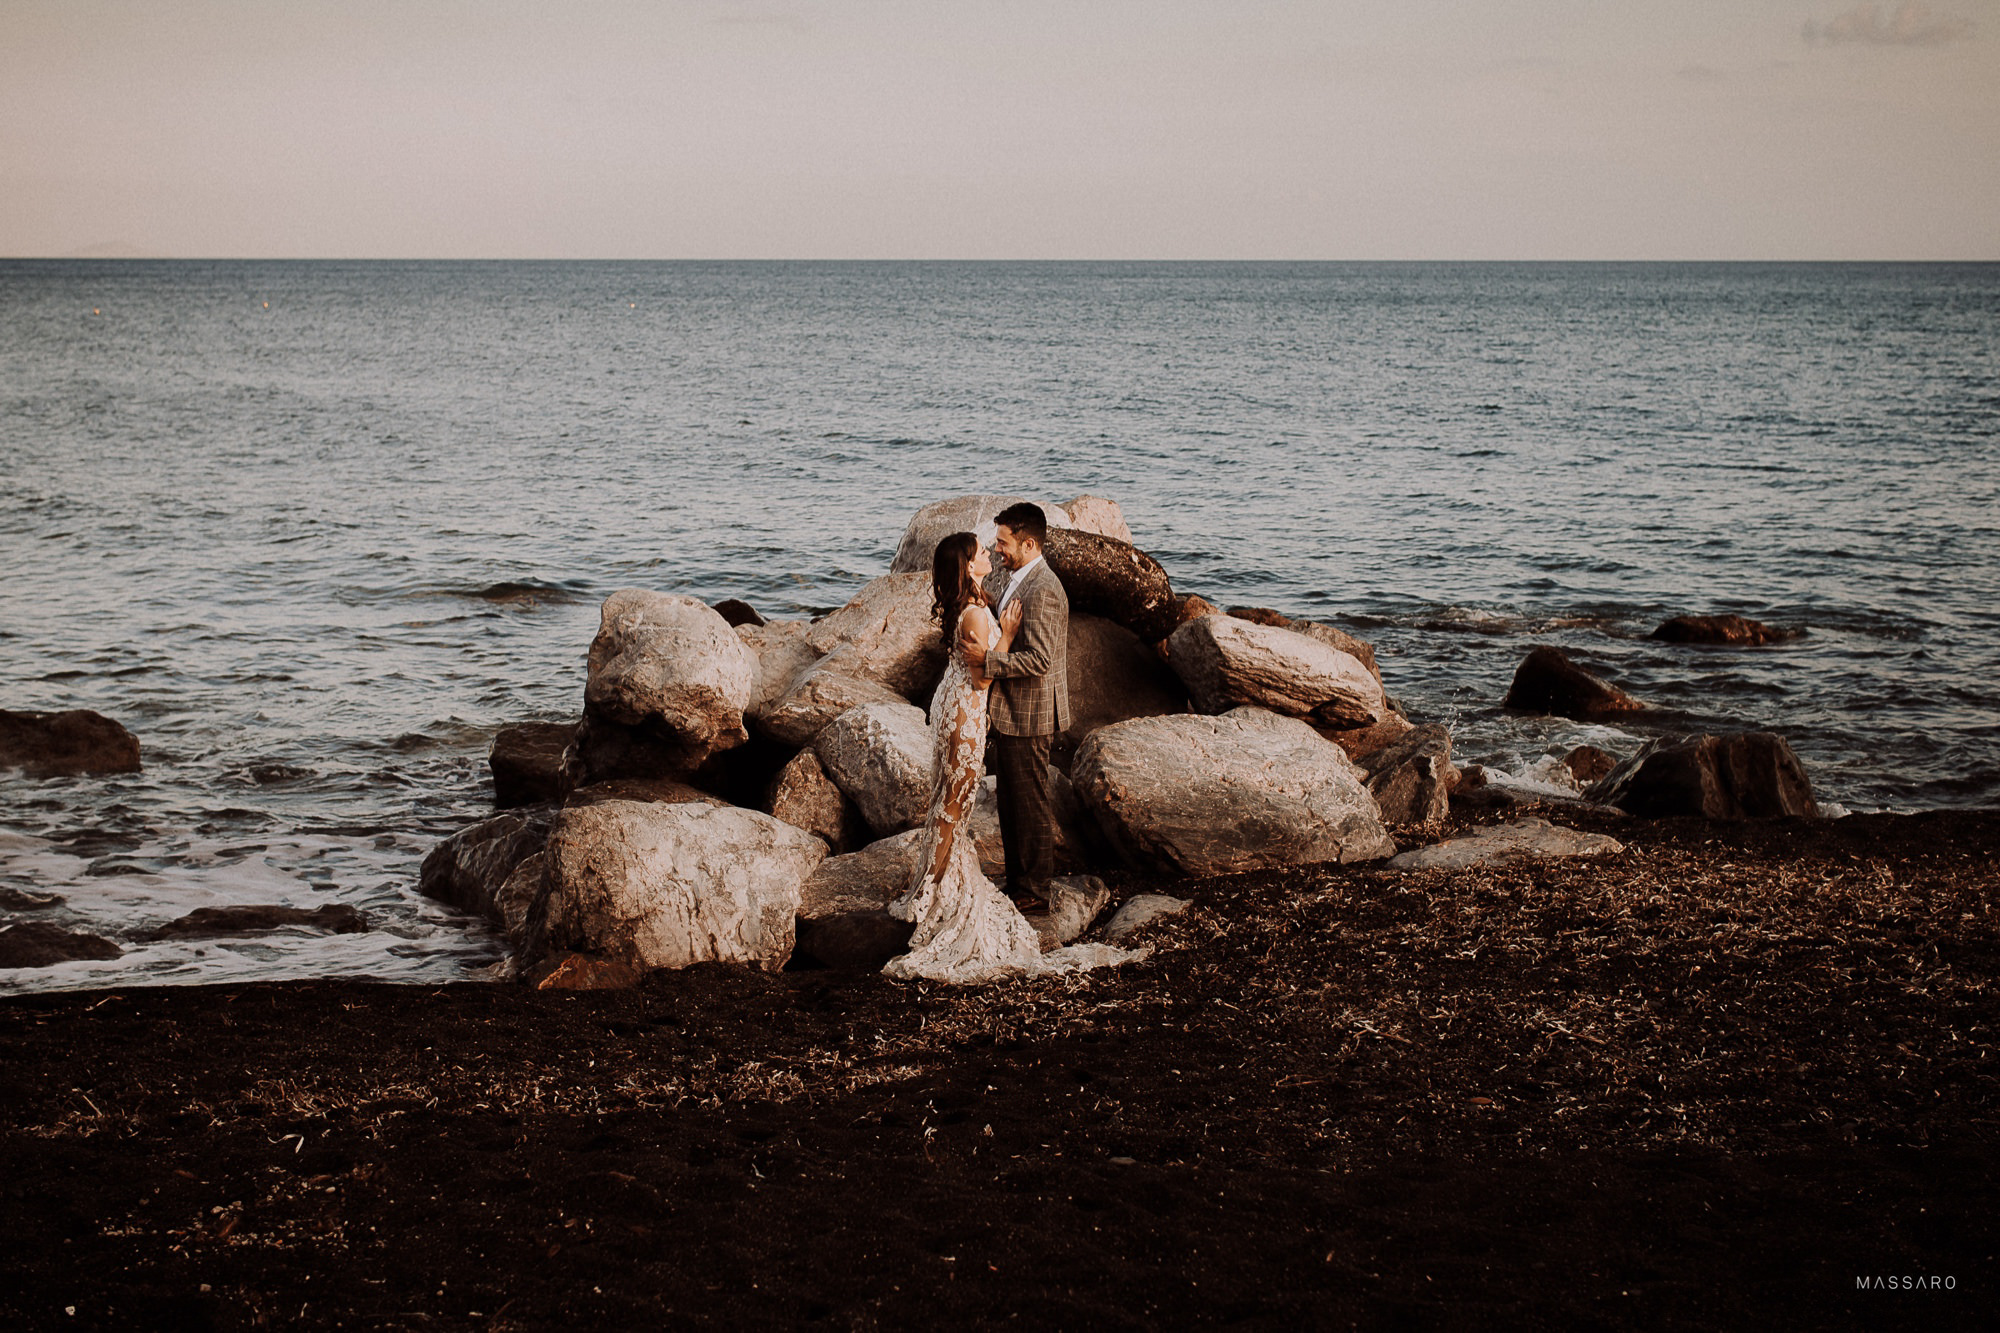 post matrimonio santorini grecia fotografo artistico massaro